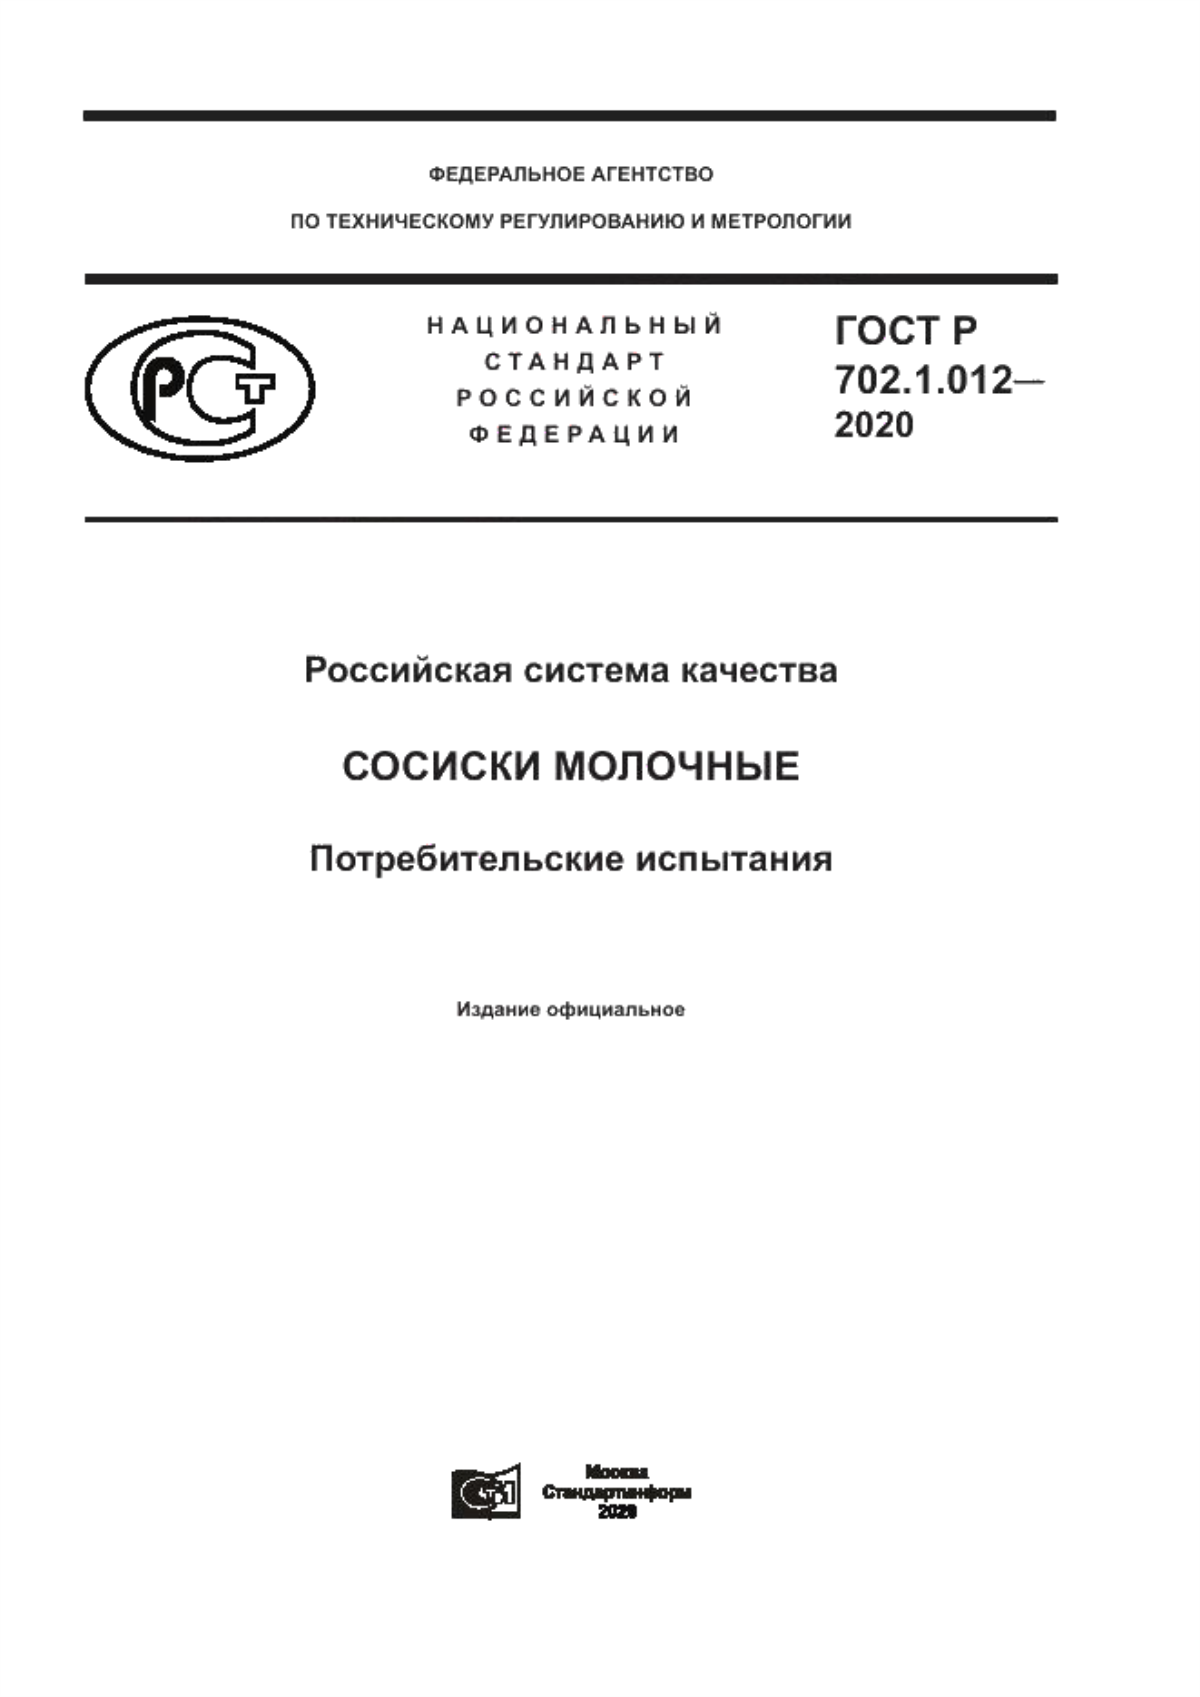 ГОСТ Р 702.1.012-2020 Российская система качества. Сосиски молочные. Потребительские испытания